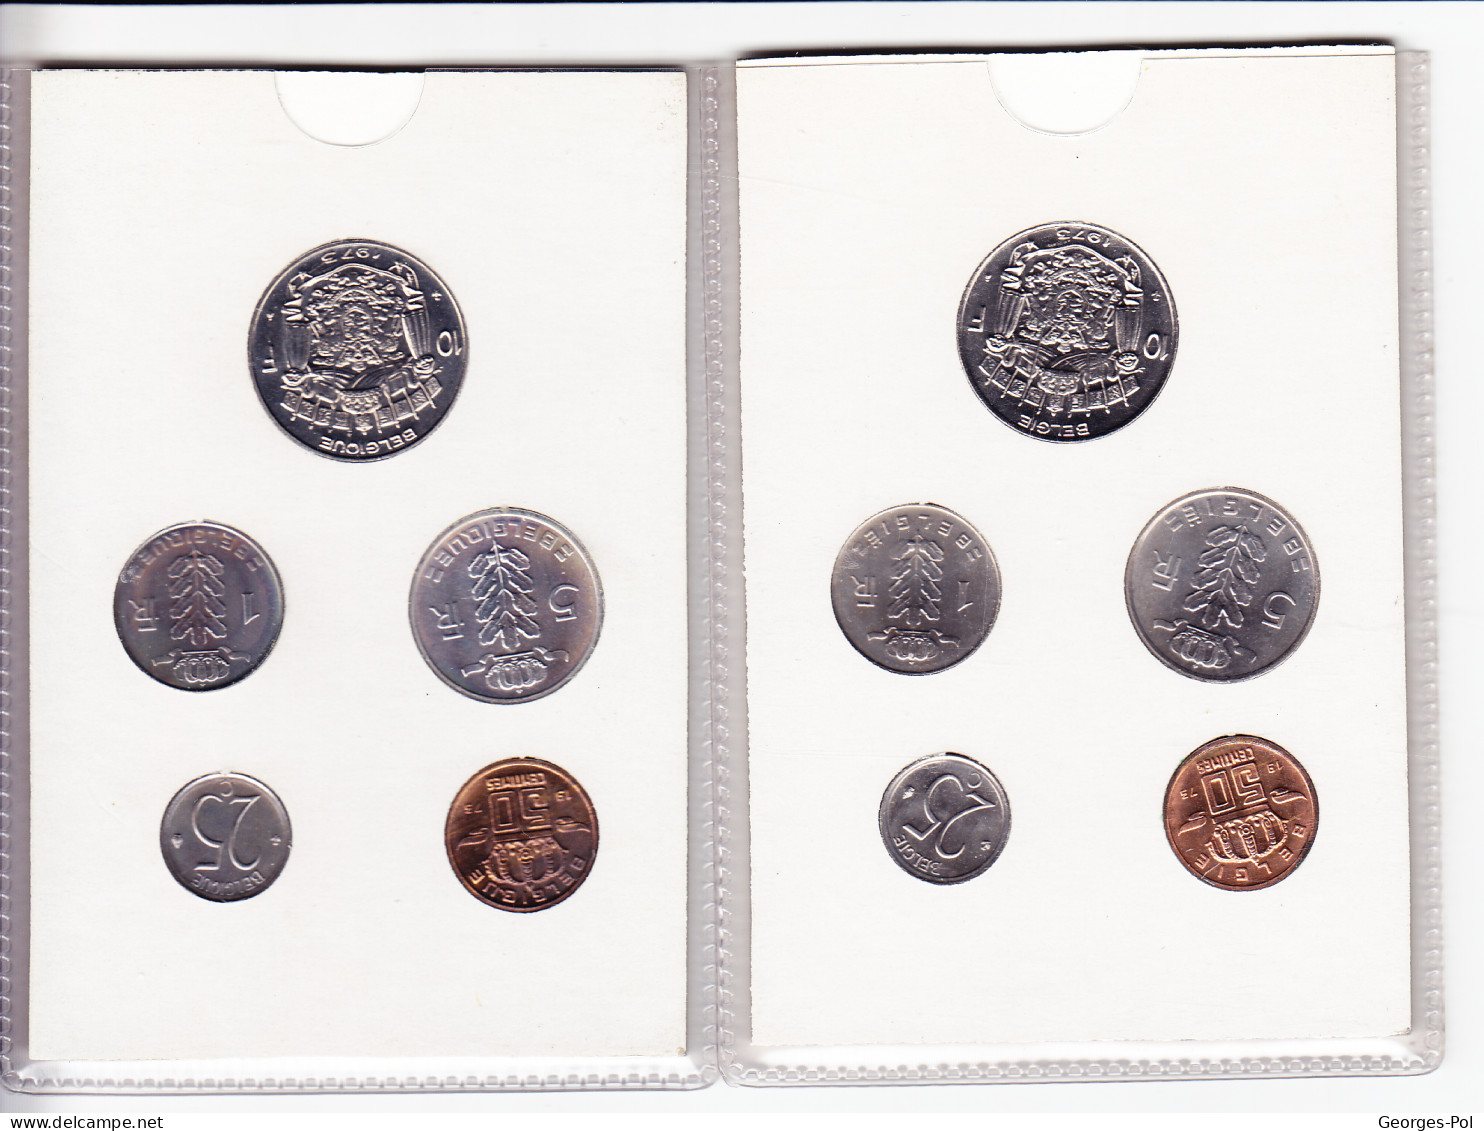 Monnaie Royale De Belgique 1973 Koninklijke Munt Van België. 2 Cartes De 5 Pièces Non Circulées - FDEC, BU, BE & Münzkassetten